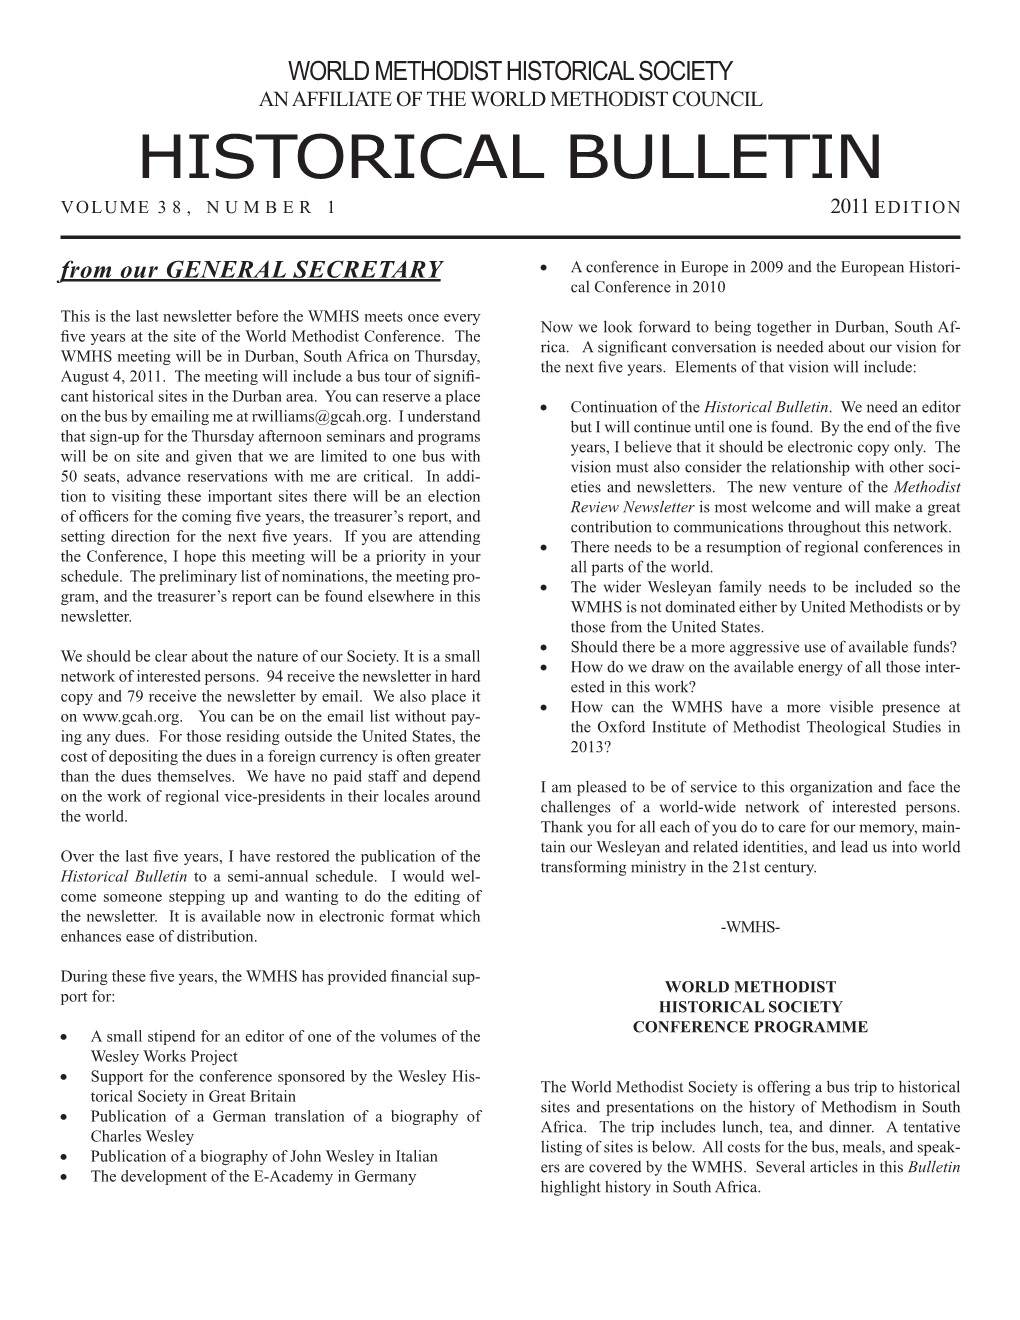 Historical Bulletin